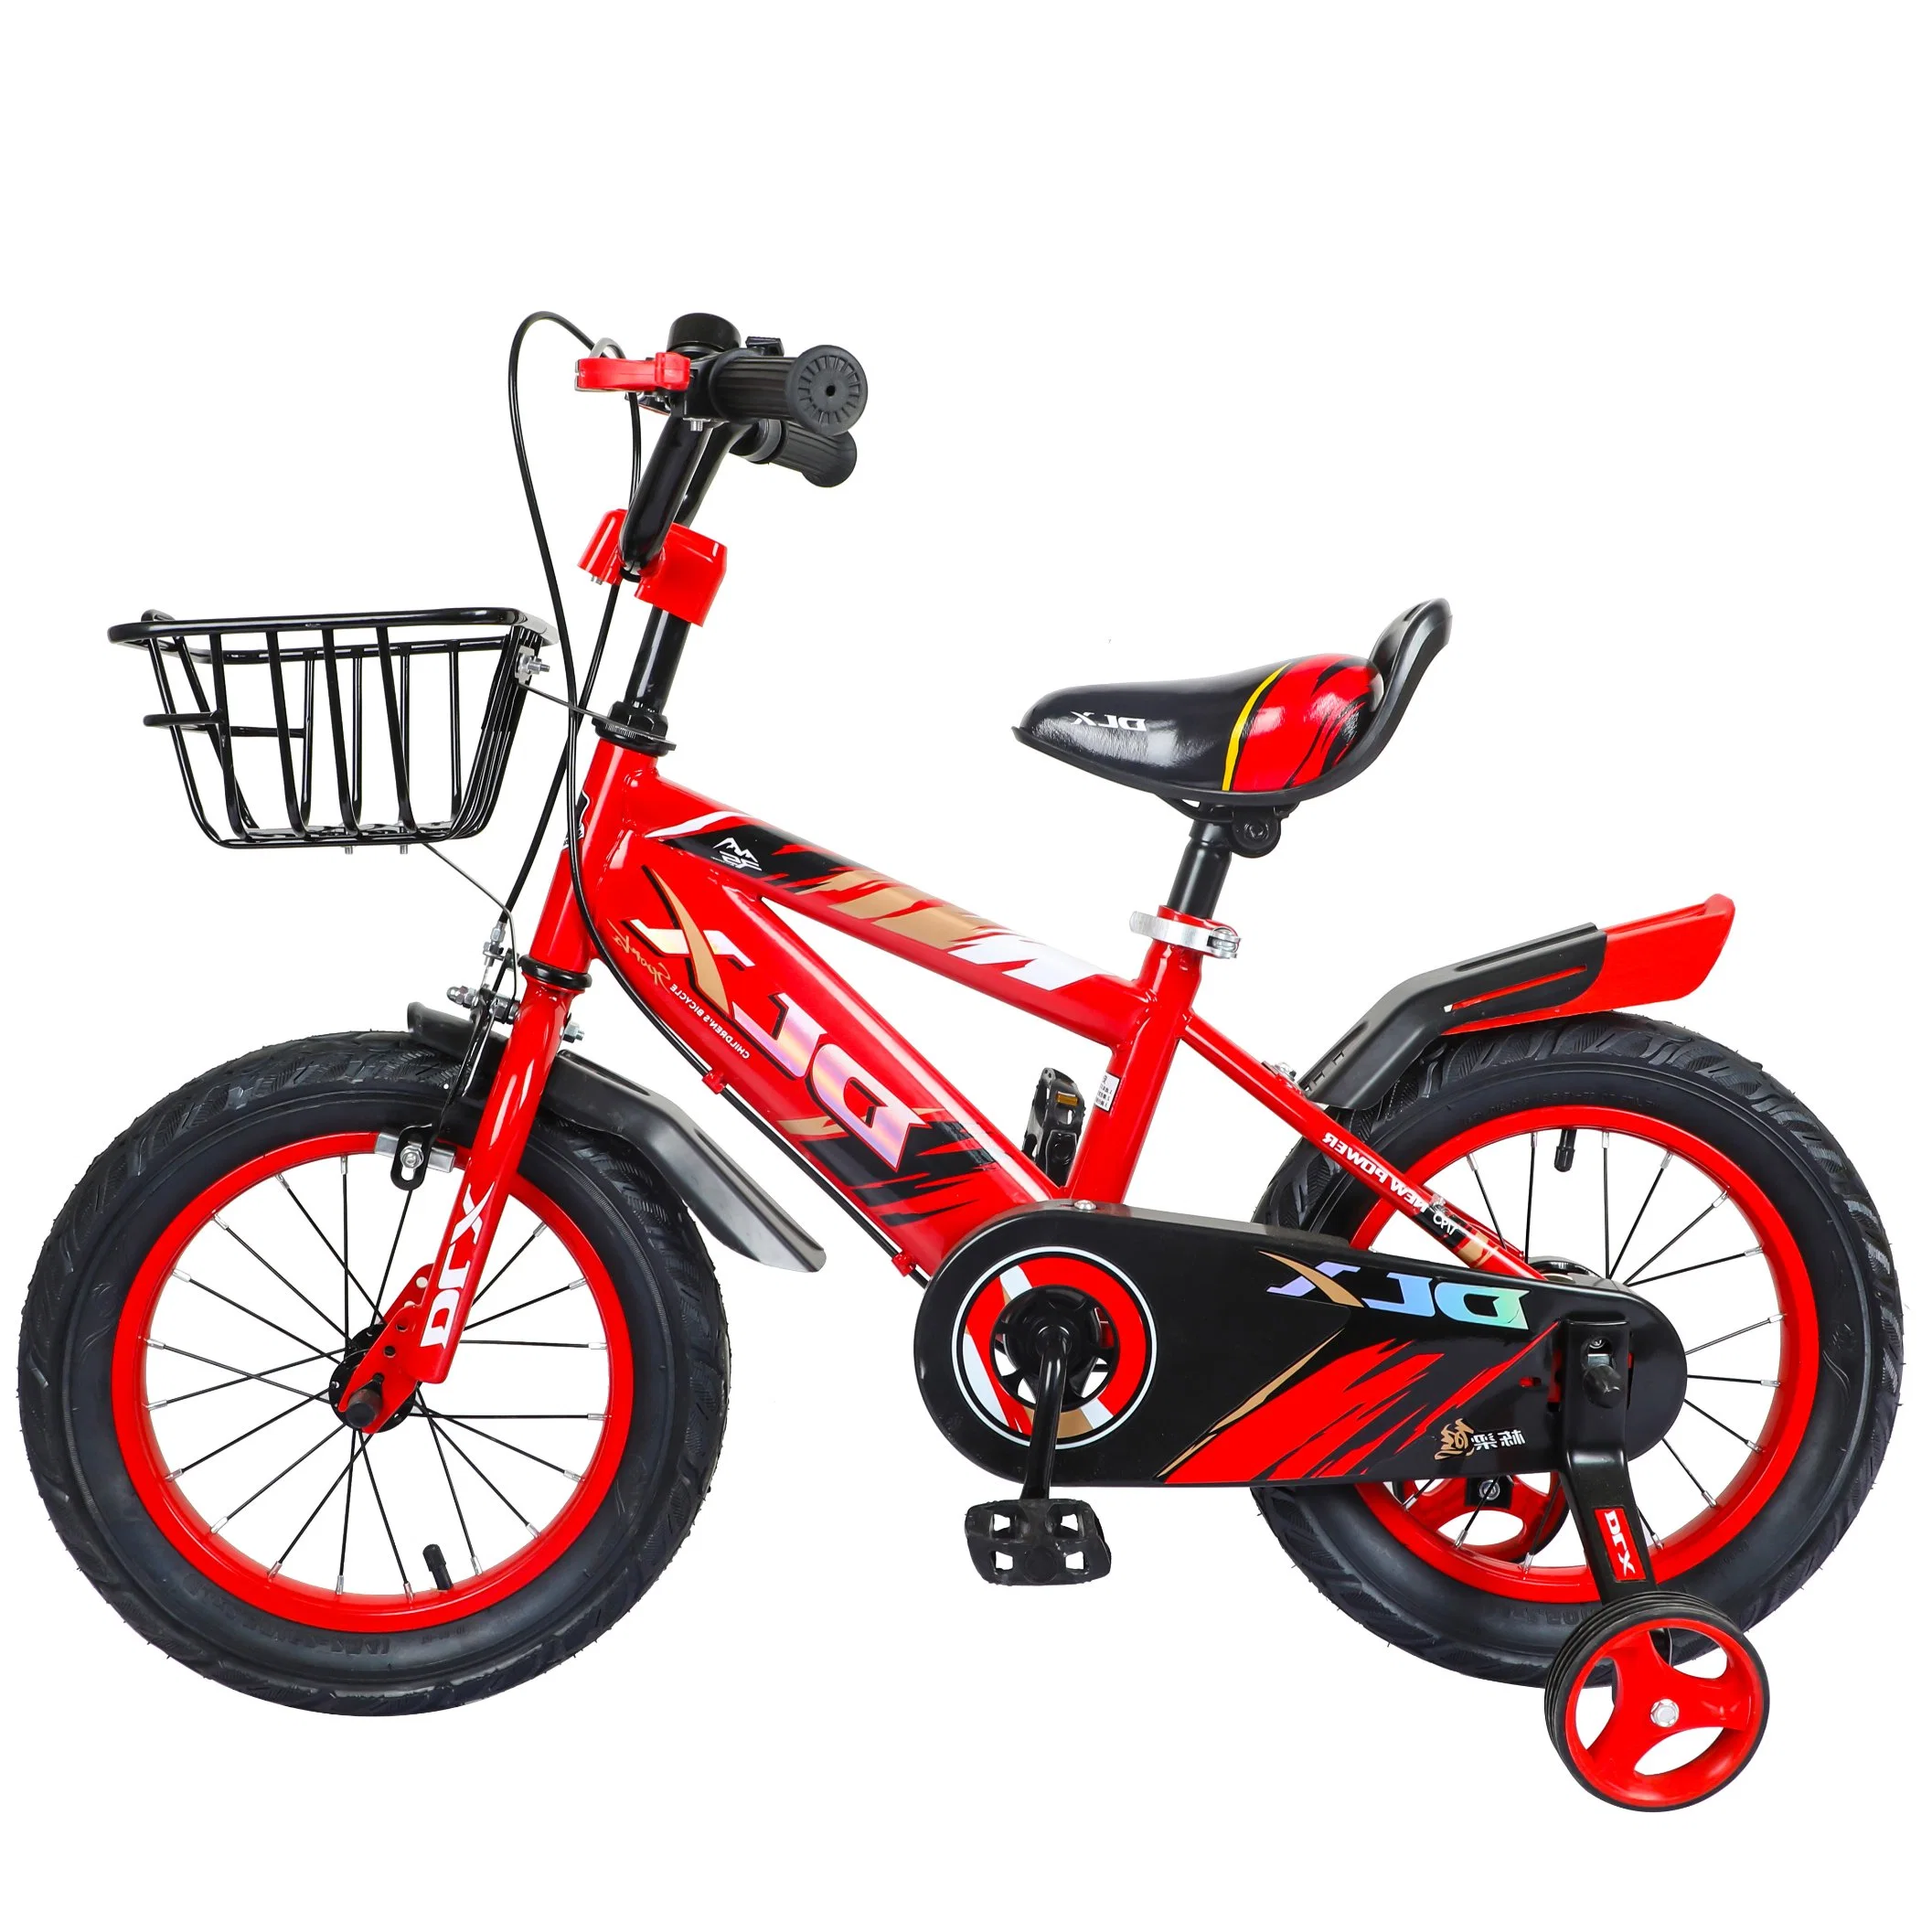 Nouveau Vélo Tout-Terrain pour Enfants Vélo Enfant 16 Pouces en Acier pour Enfants de 5 à 12 Ans